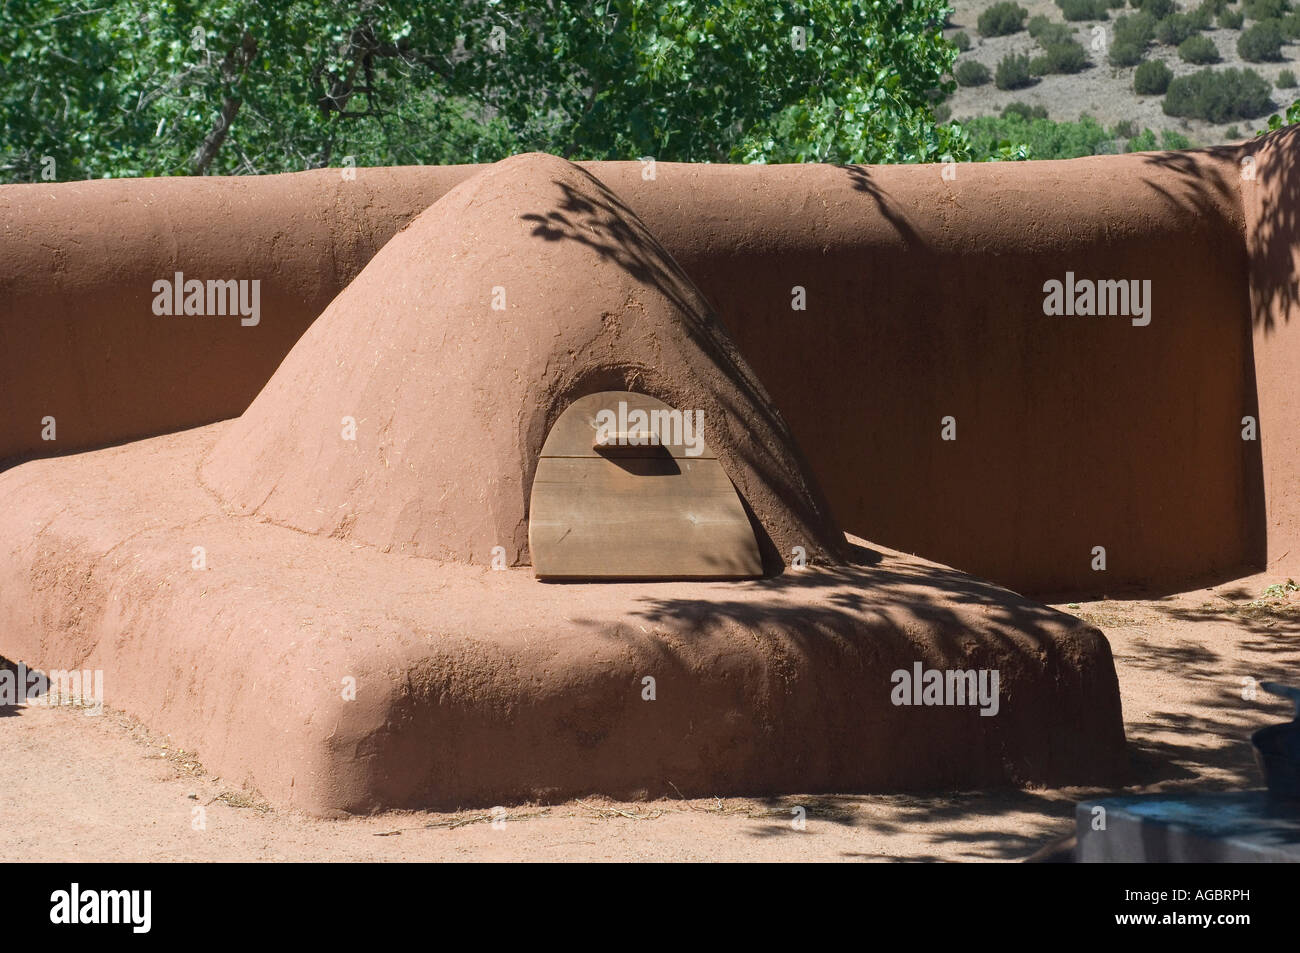 Adobe outdoor oven at Rancho de las Golondrinas a Spanish colonial homestead NM. Digital photograph Stock Photo